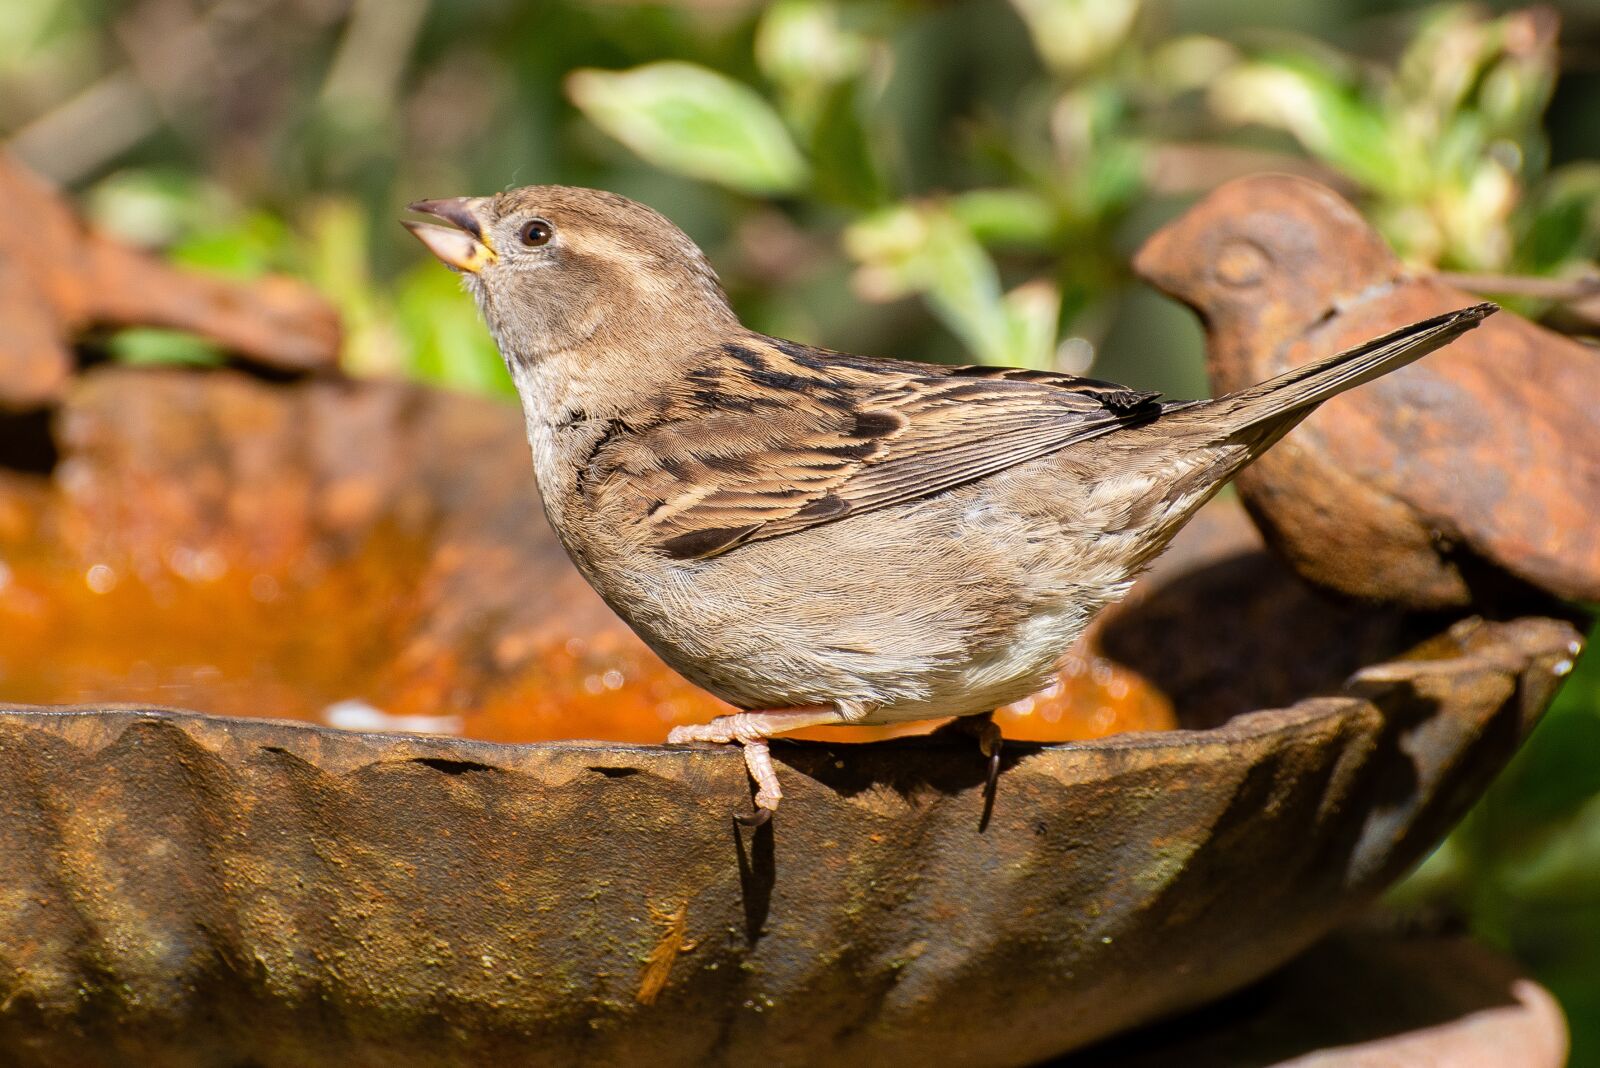 Nikon D800 sample photo. Sparrow, house sparrow, bird photography